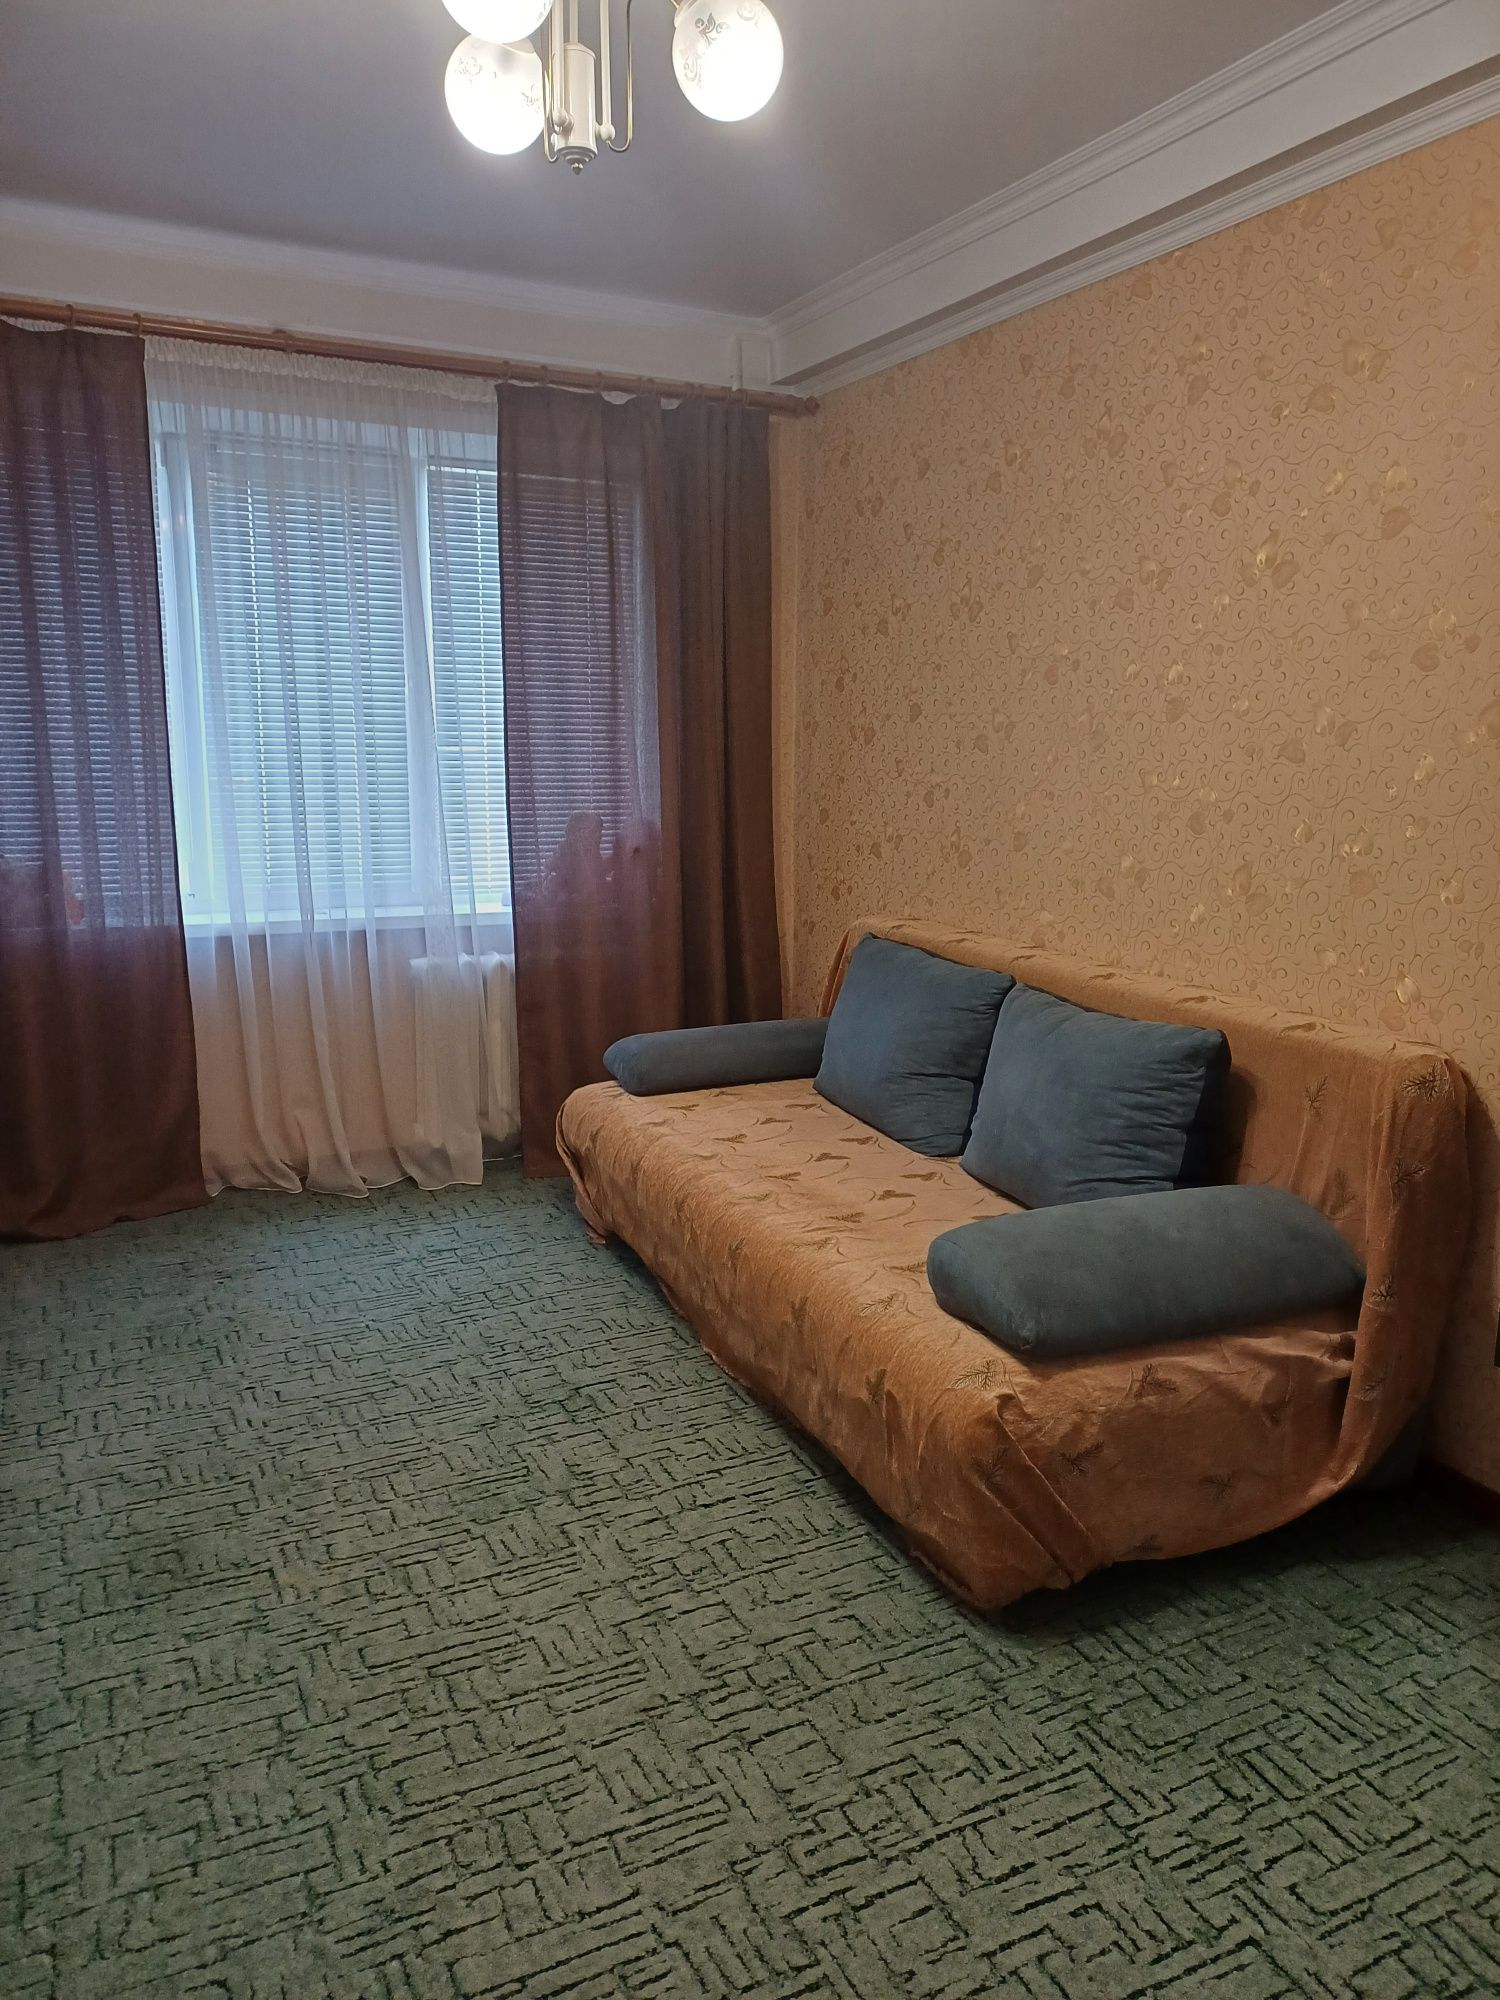 Здається 2-х кімнатна квартира в Шевченківському районі 7000